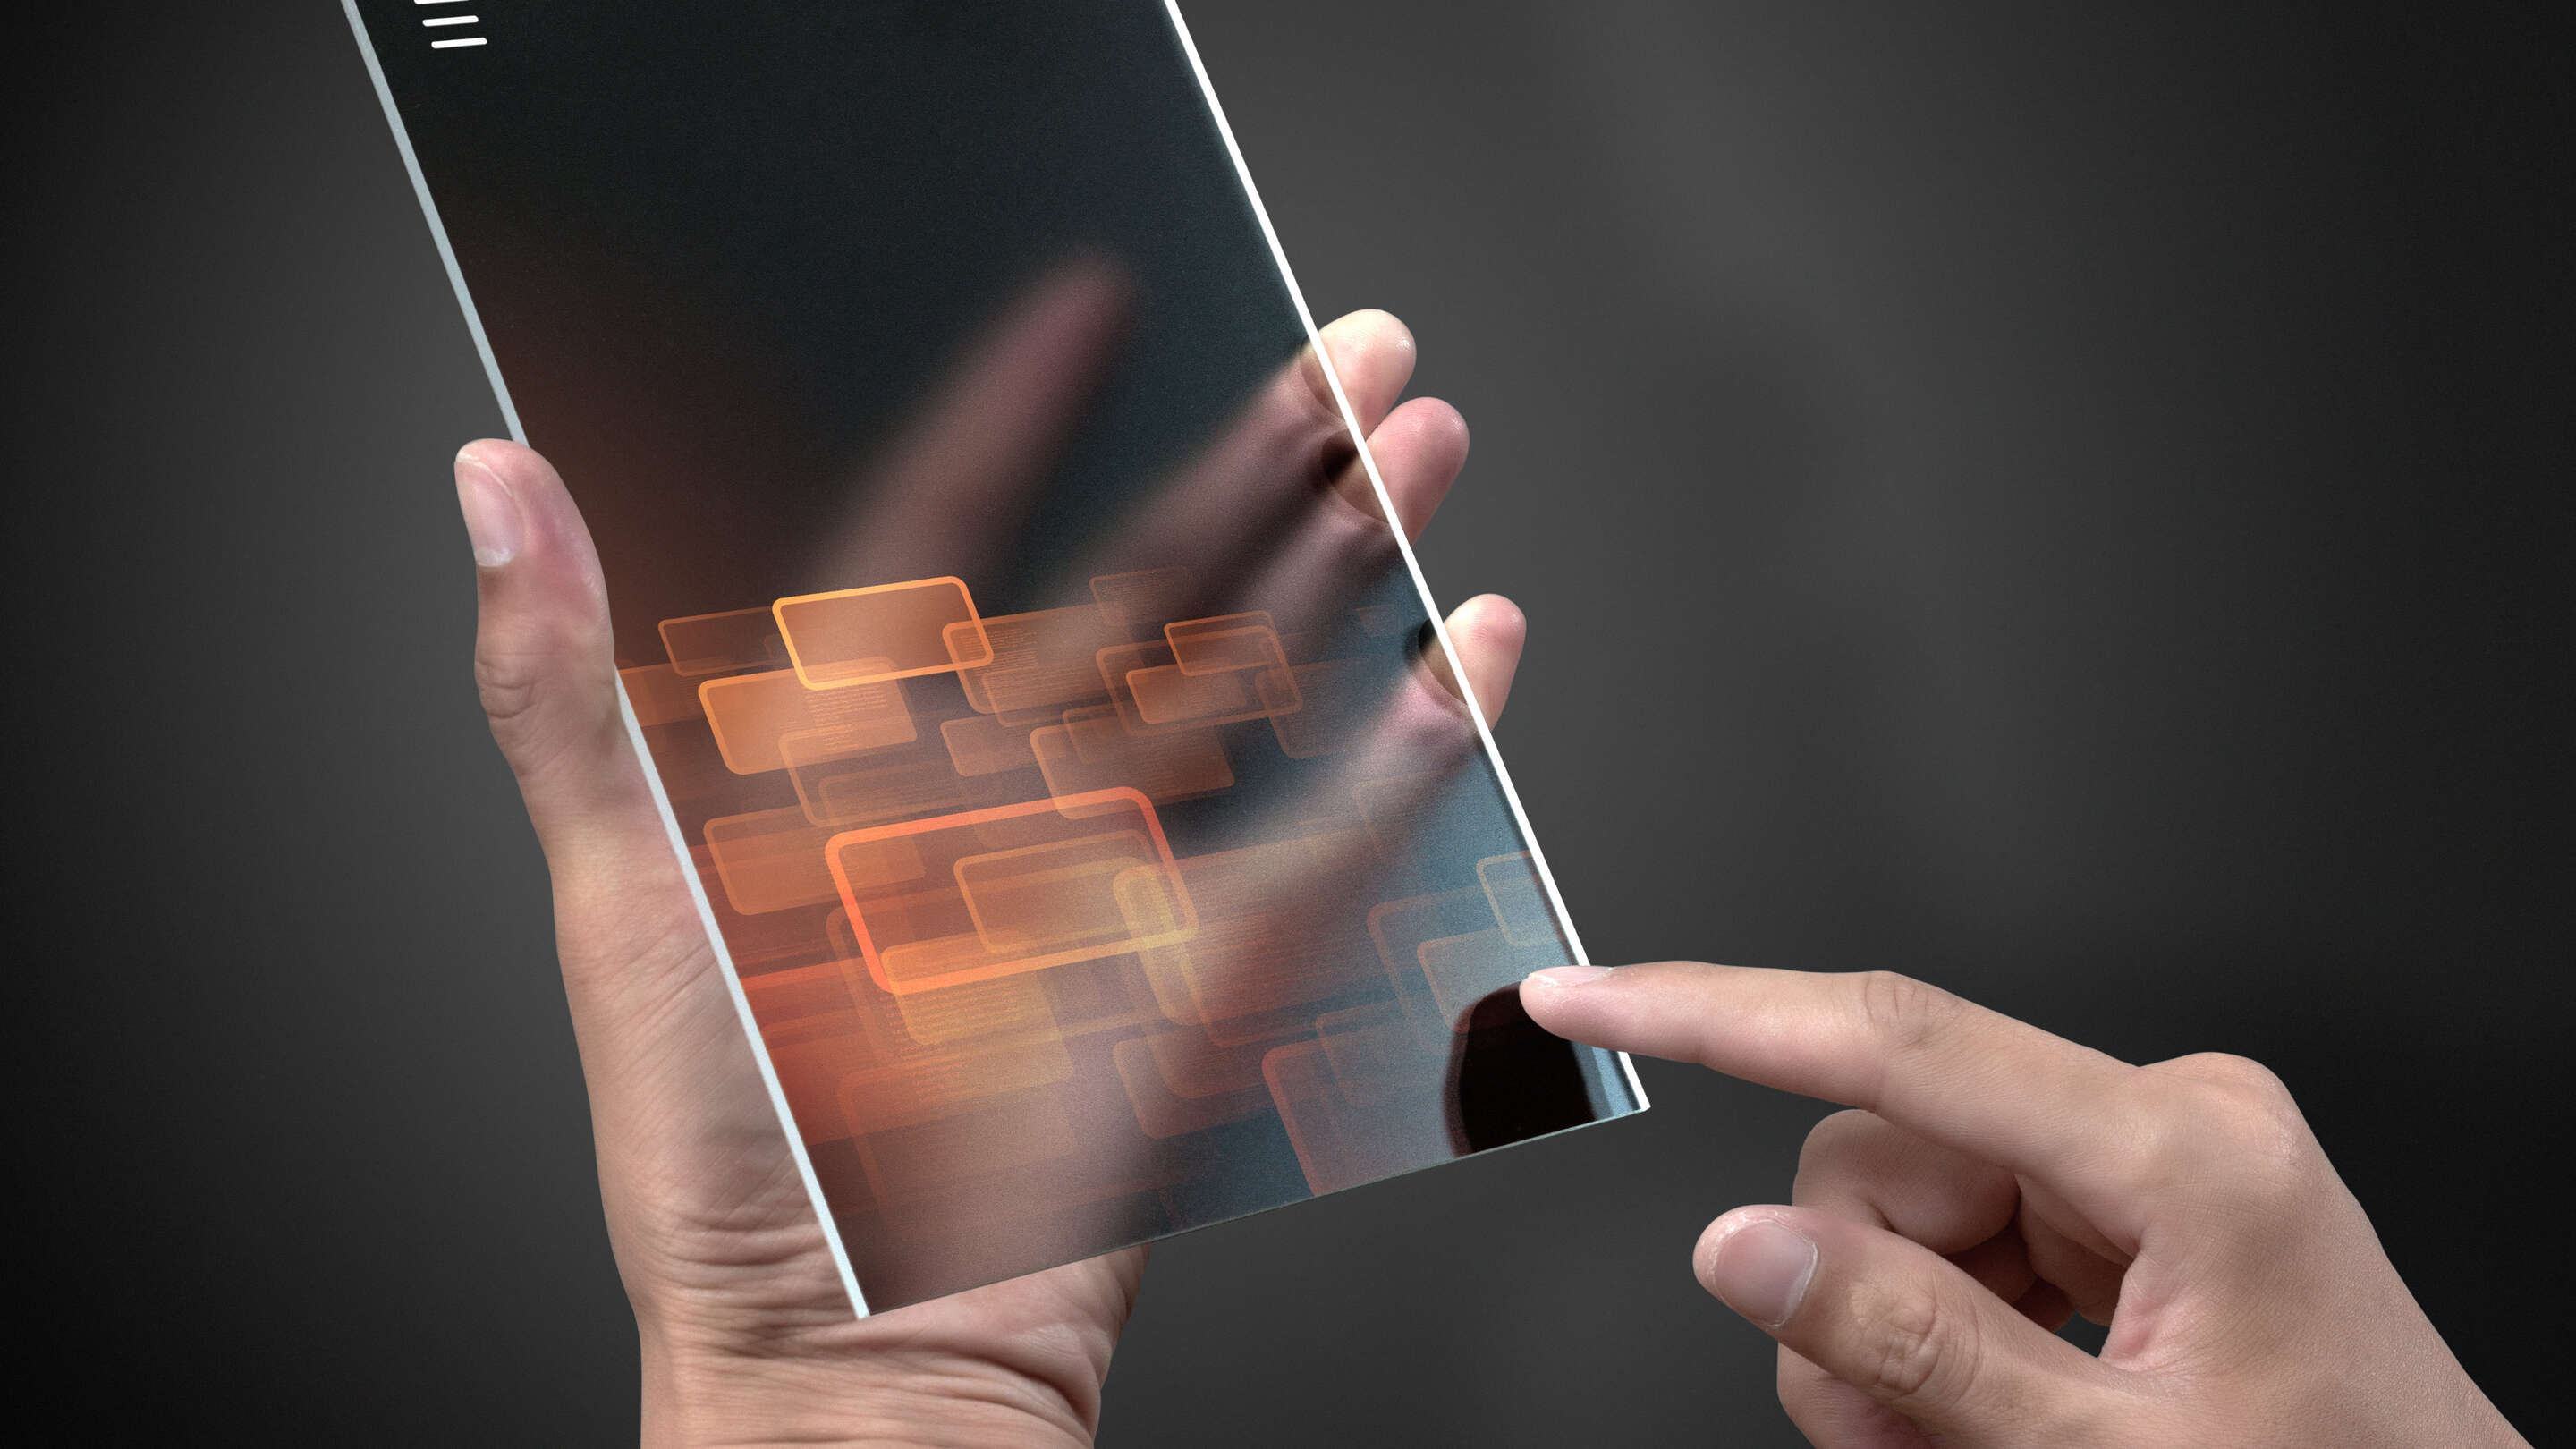 Développement - Prototypage d’une personne touchant un appareil transparent